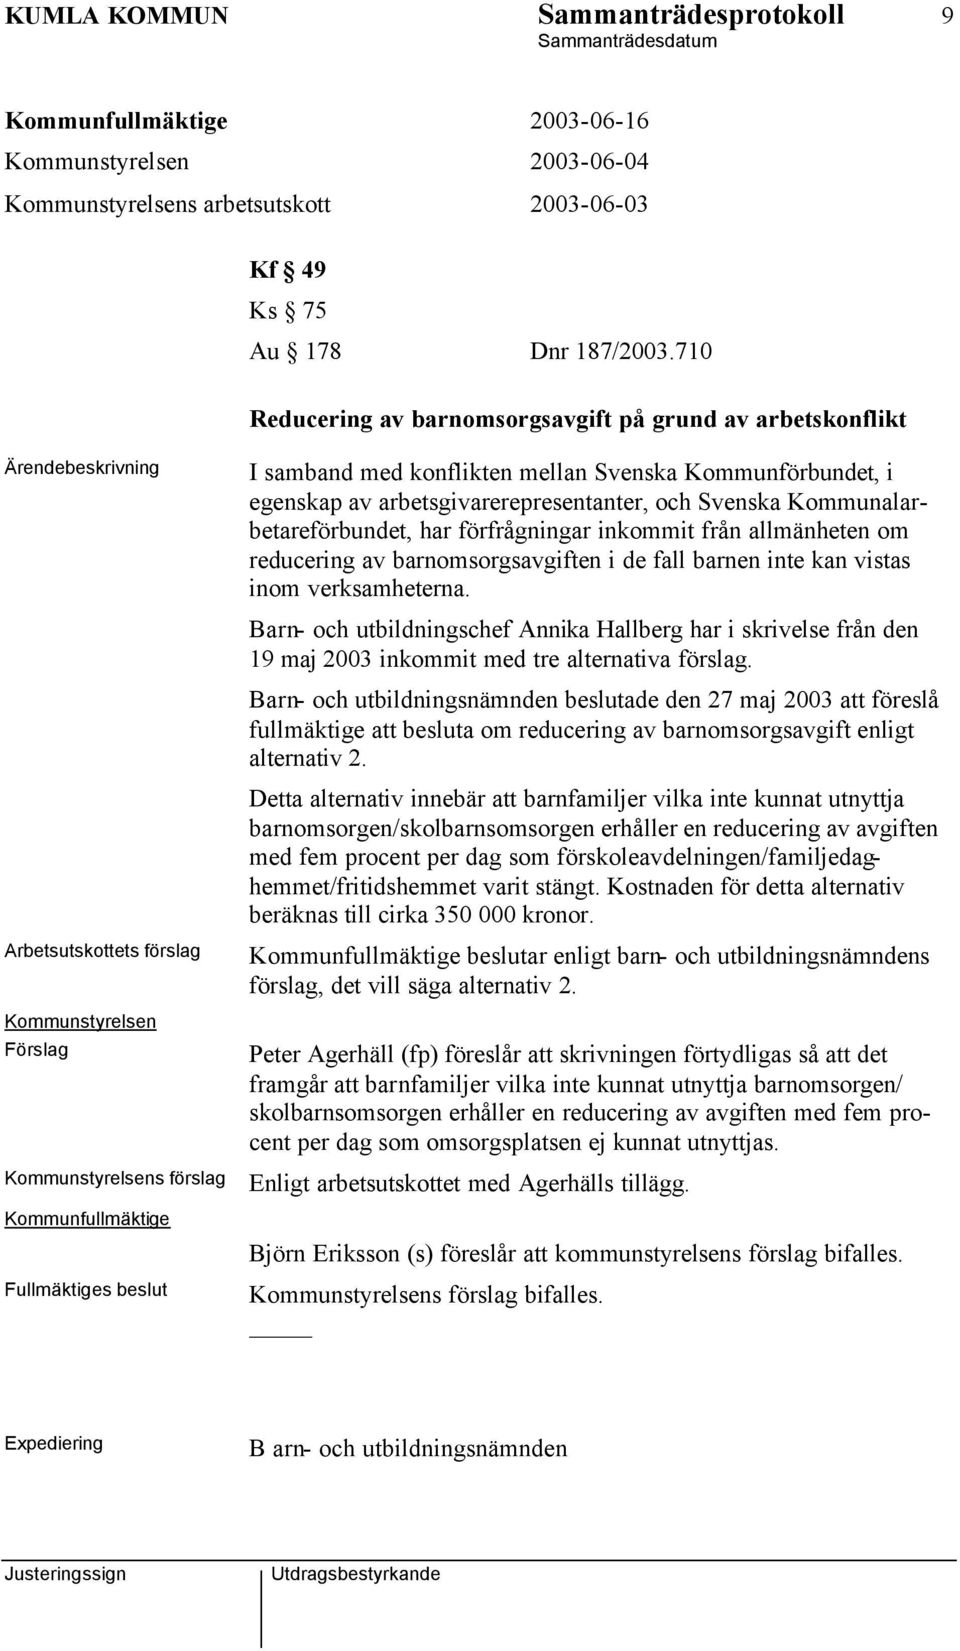 Kommunförbundet, i egenskap av arbetsgivarerepresentanter, och Svenska Kommunalarbetareförbundet, har förfrågningar inkommit från allmänheten om reducering av barnomsorgsavgiften i de fall barnen